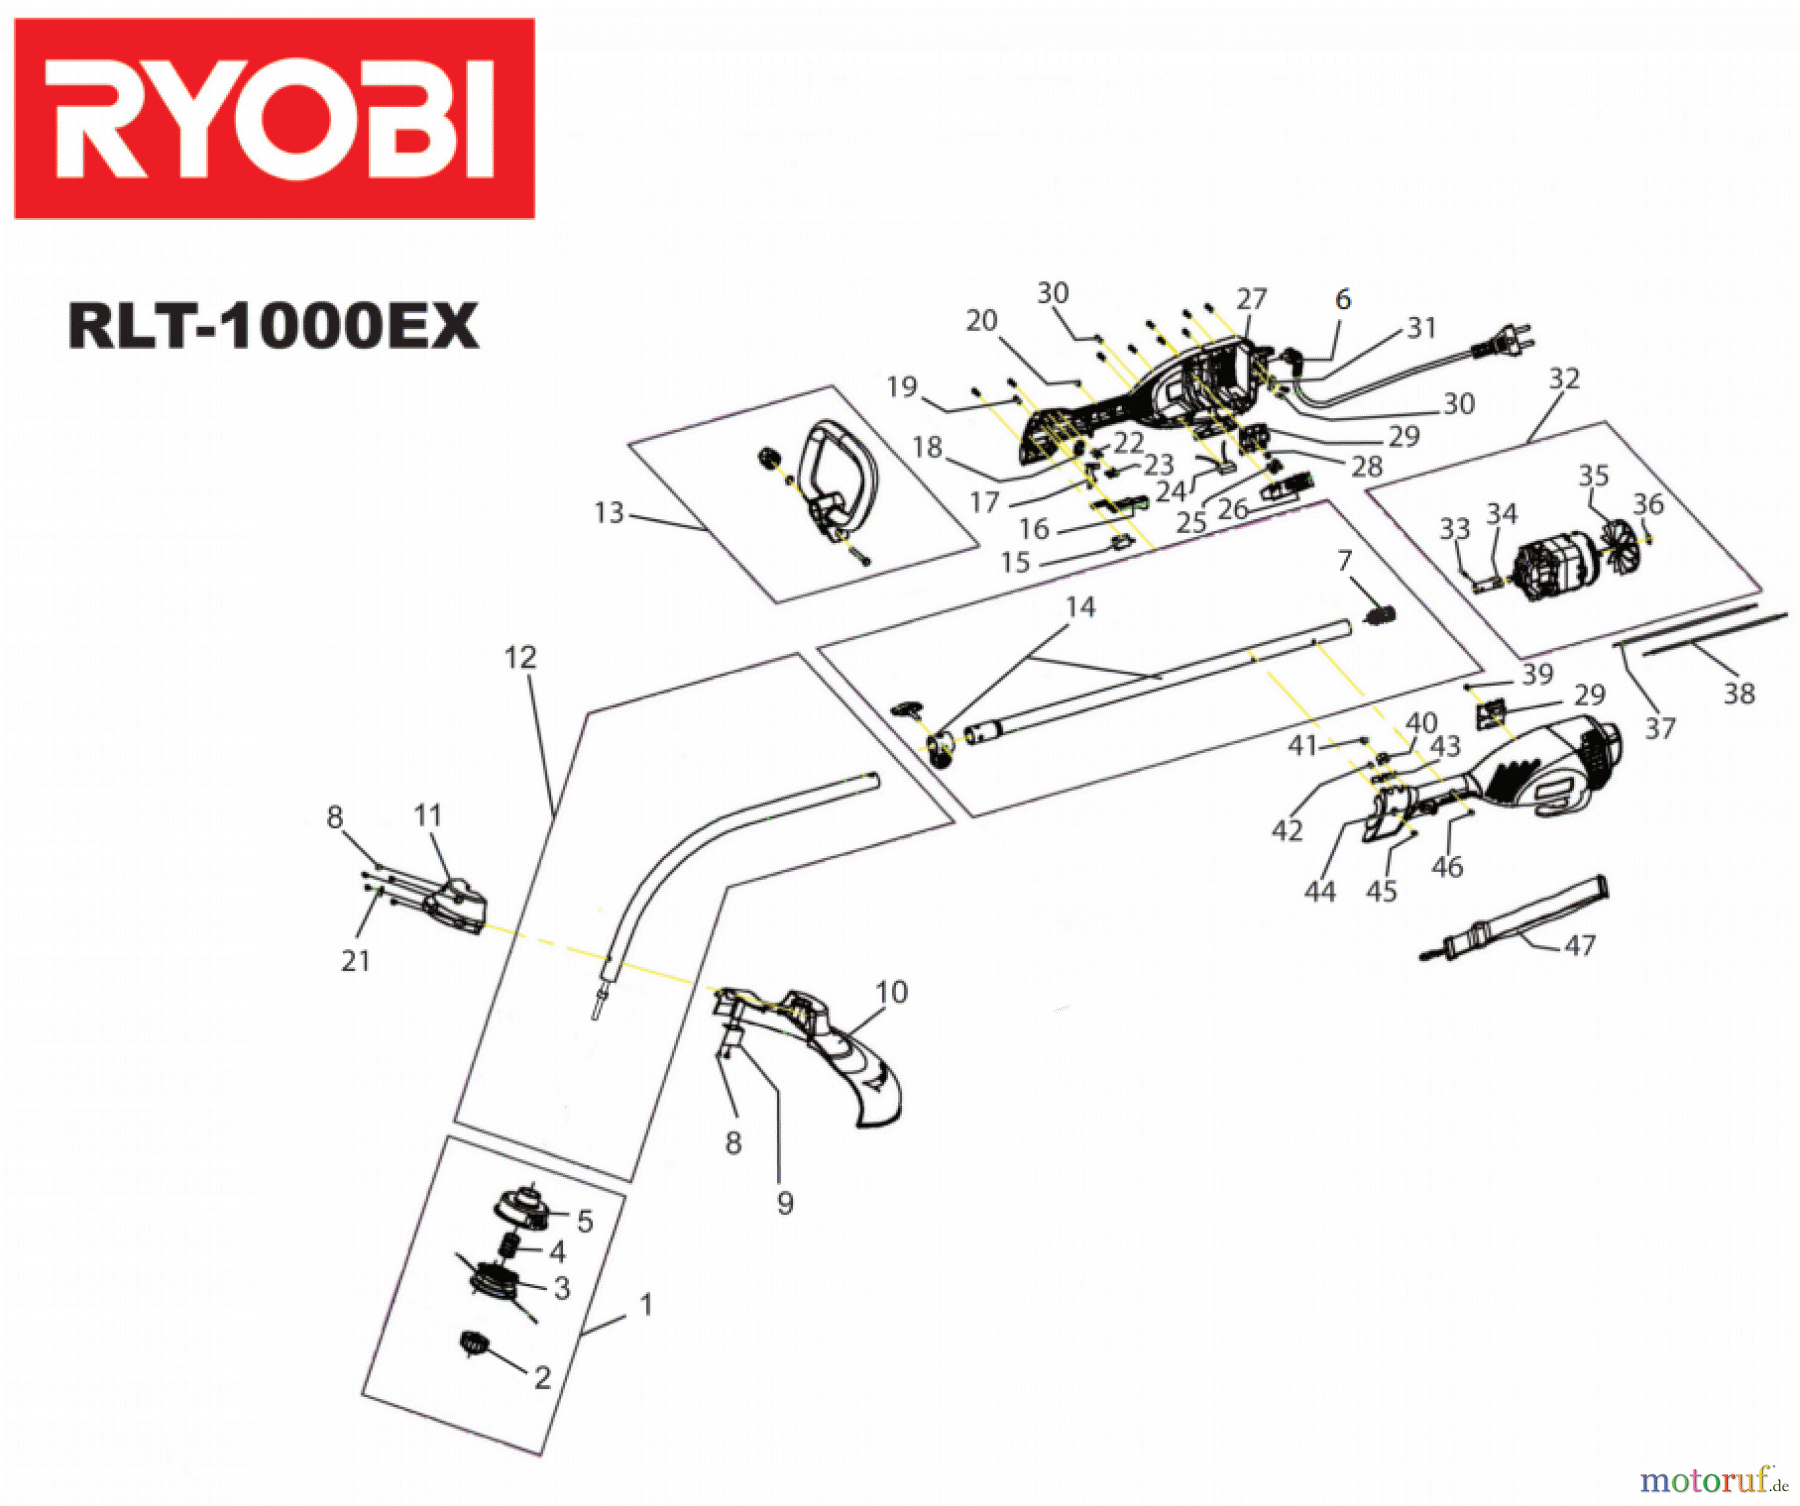  Ryobi Rasentrimmer Elektro RLT1000EX#2 Version 2 ab 2011